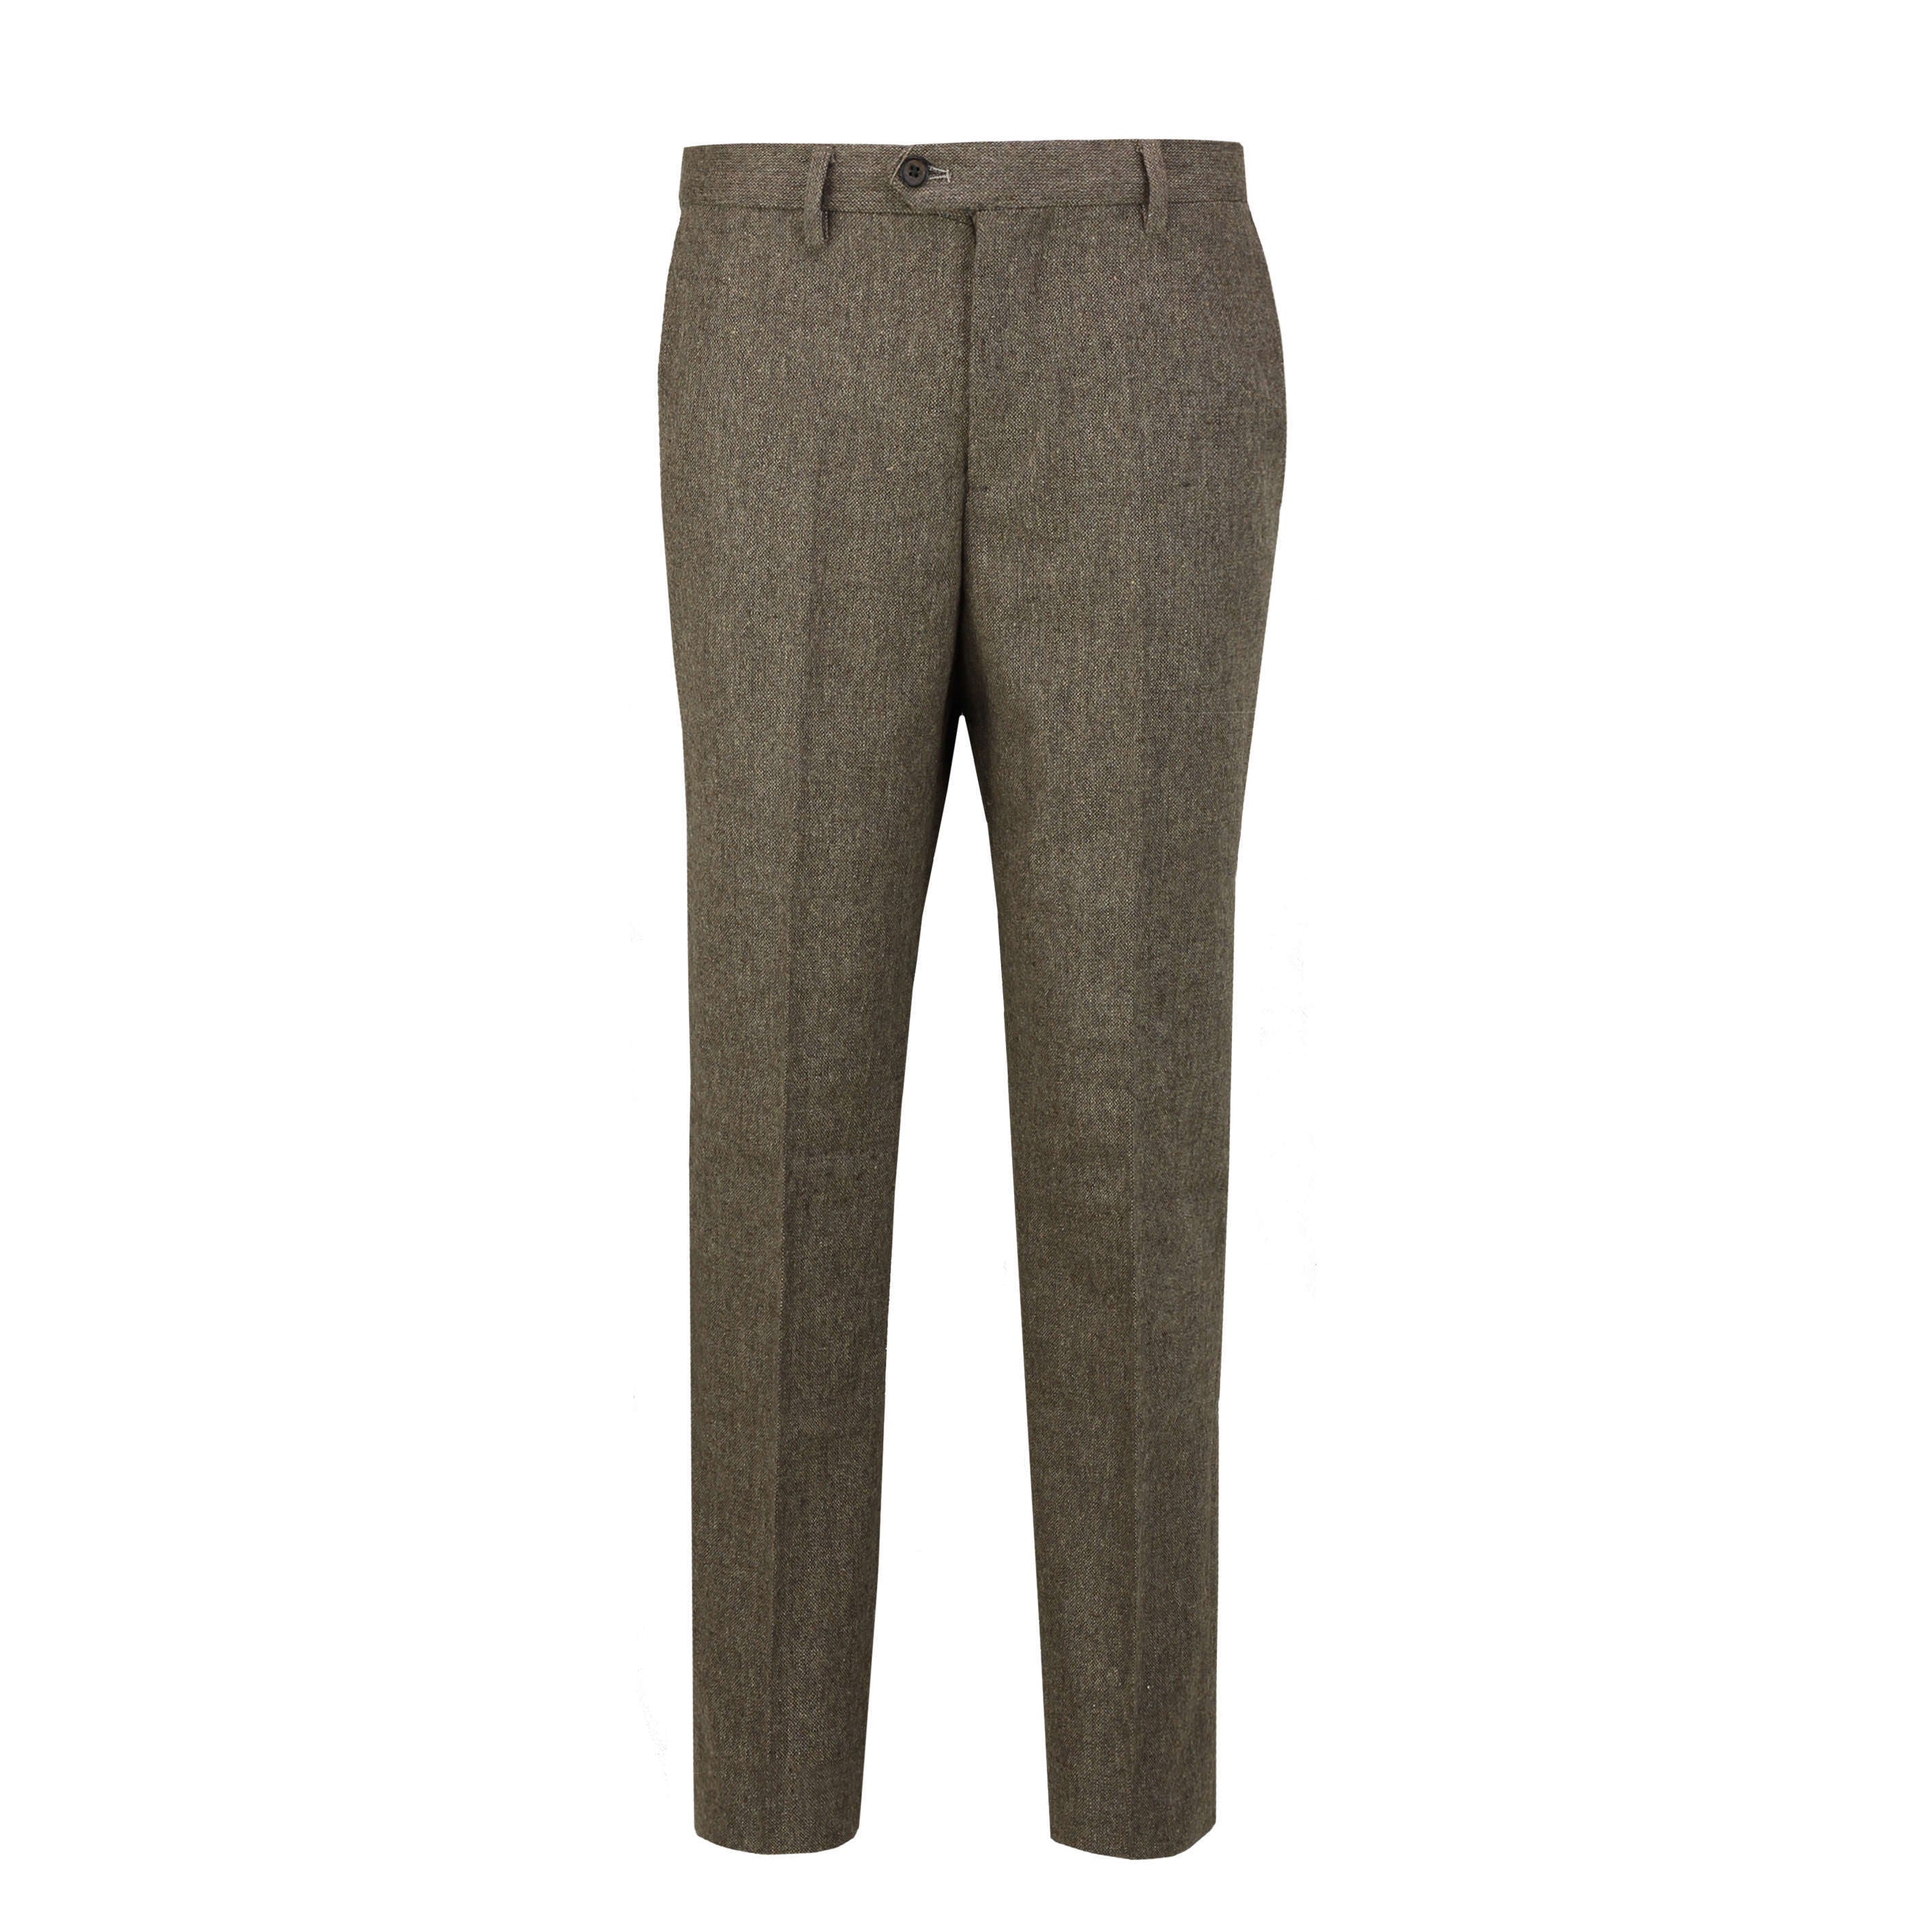 Tan Brown Tweed Suit Trouser - X6058-4